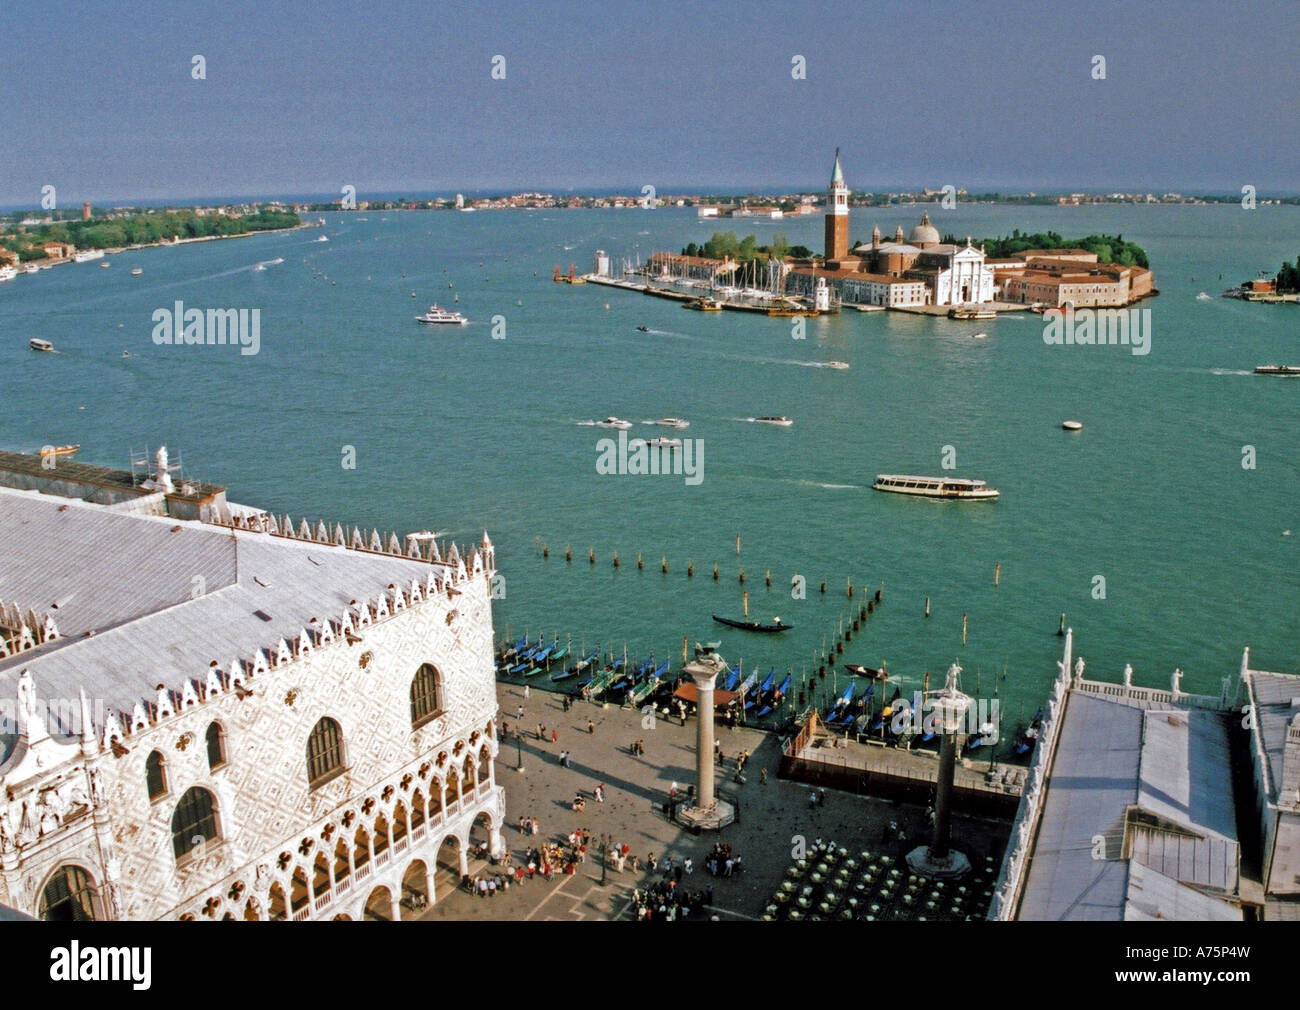 Venecia vista de la Catedral de San Giorgio Maggiore del Campanile de la plaza de San Marcos - ver descripción bekow para más detalles Foto de stock